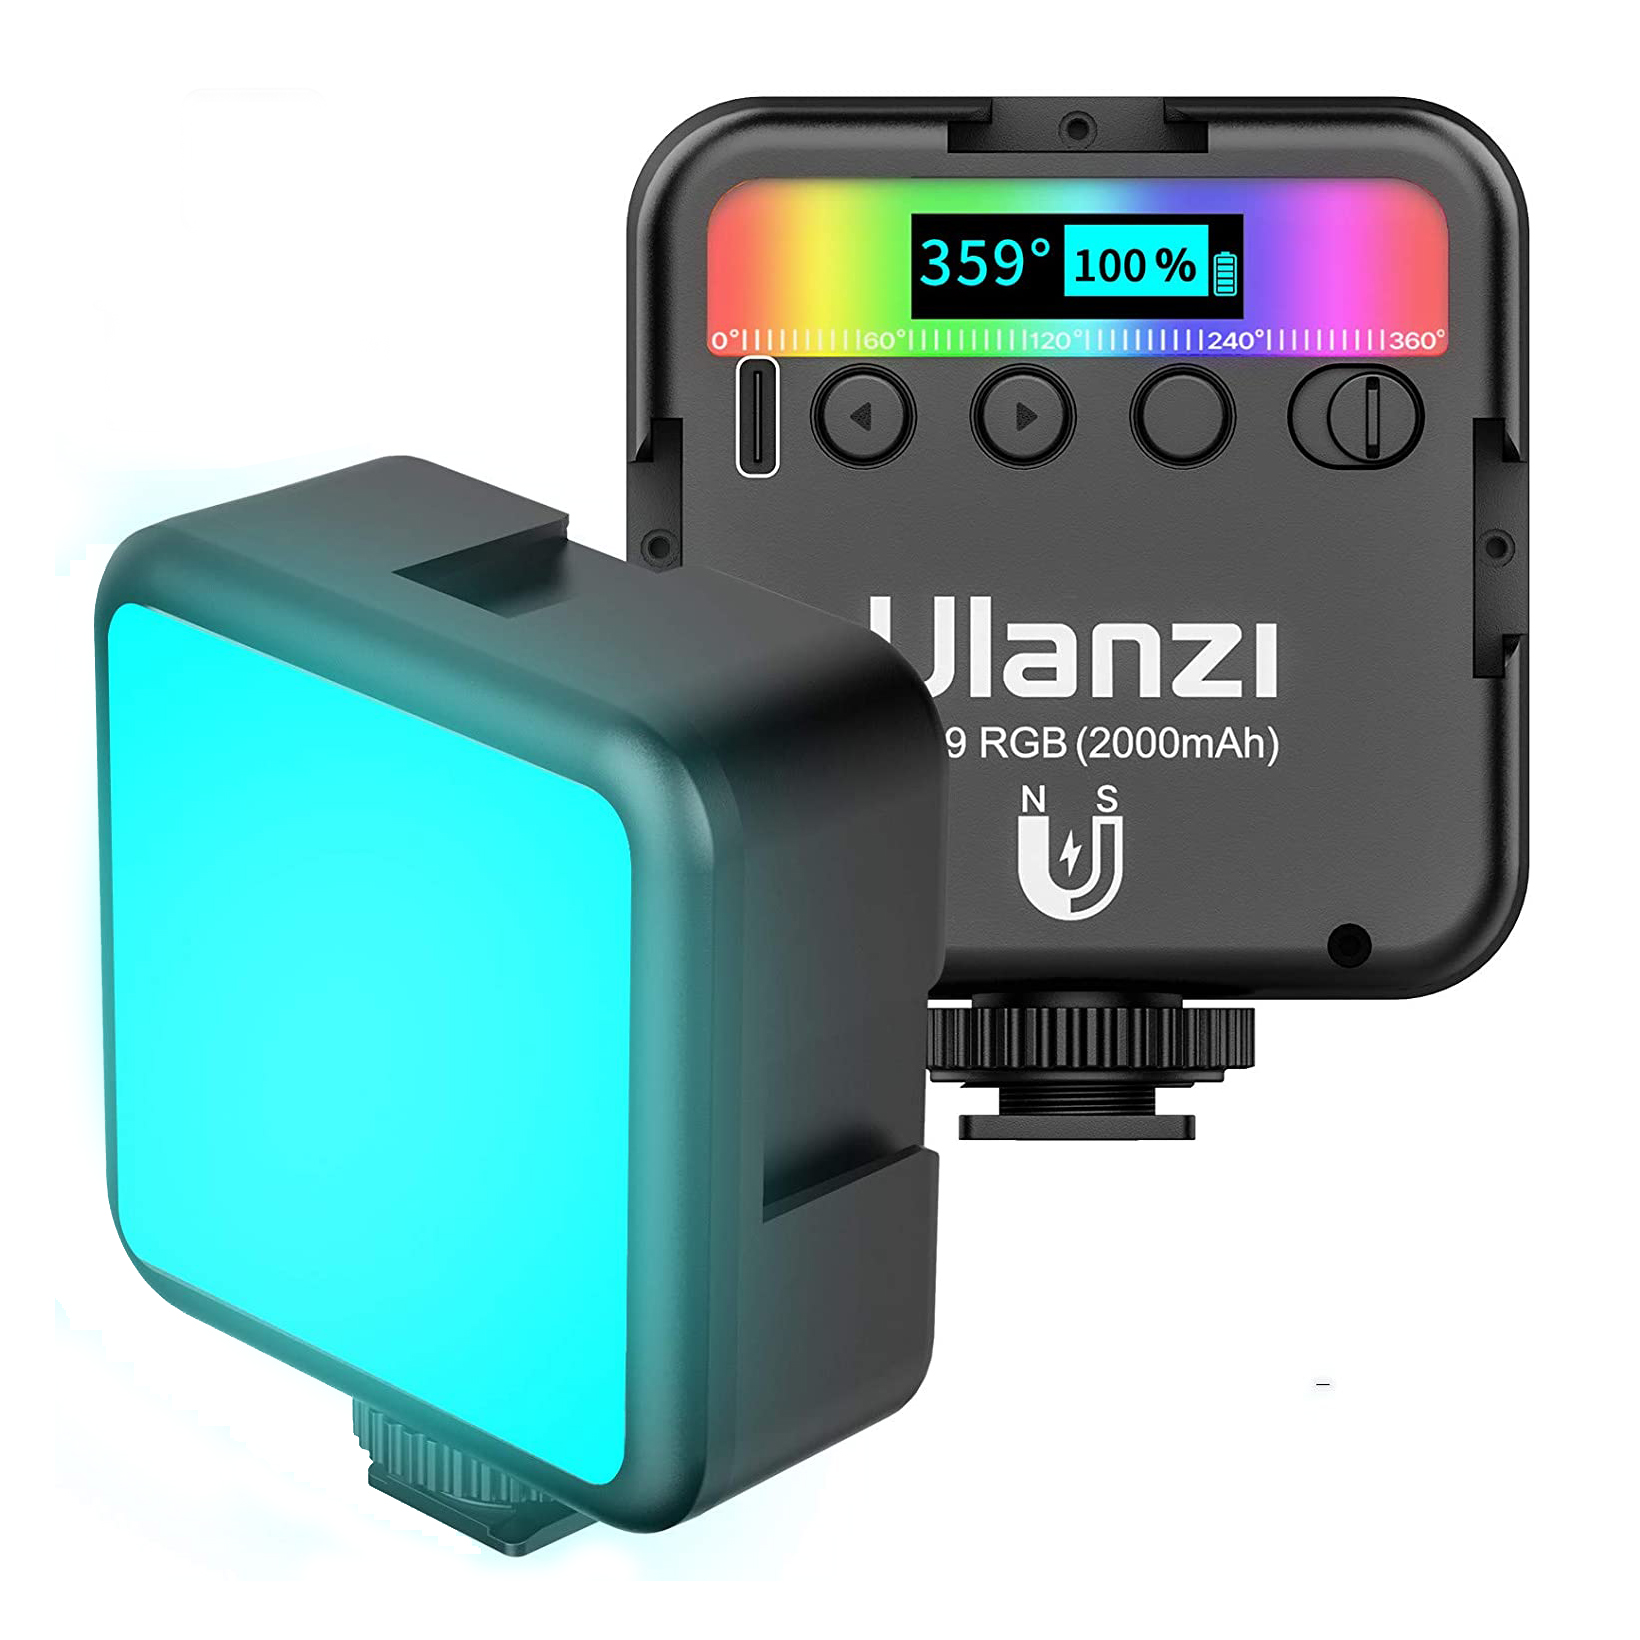 LED recargable Ulanzi VL-49 RGB de 6 watts, con batería de litio de 2000mAh